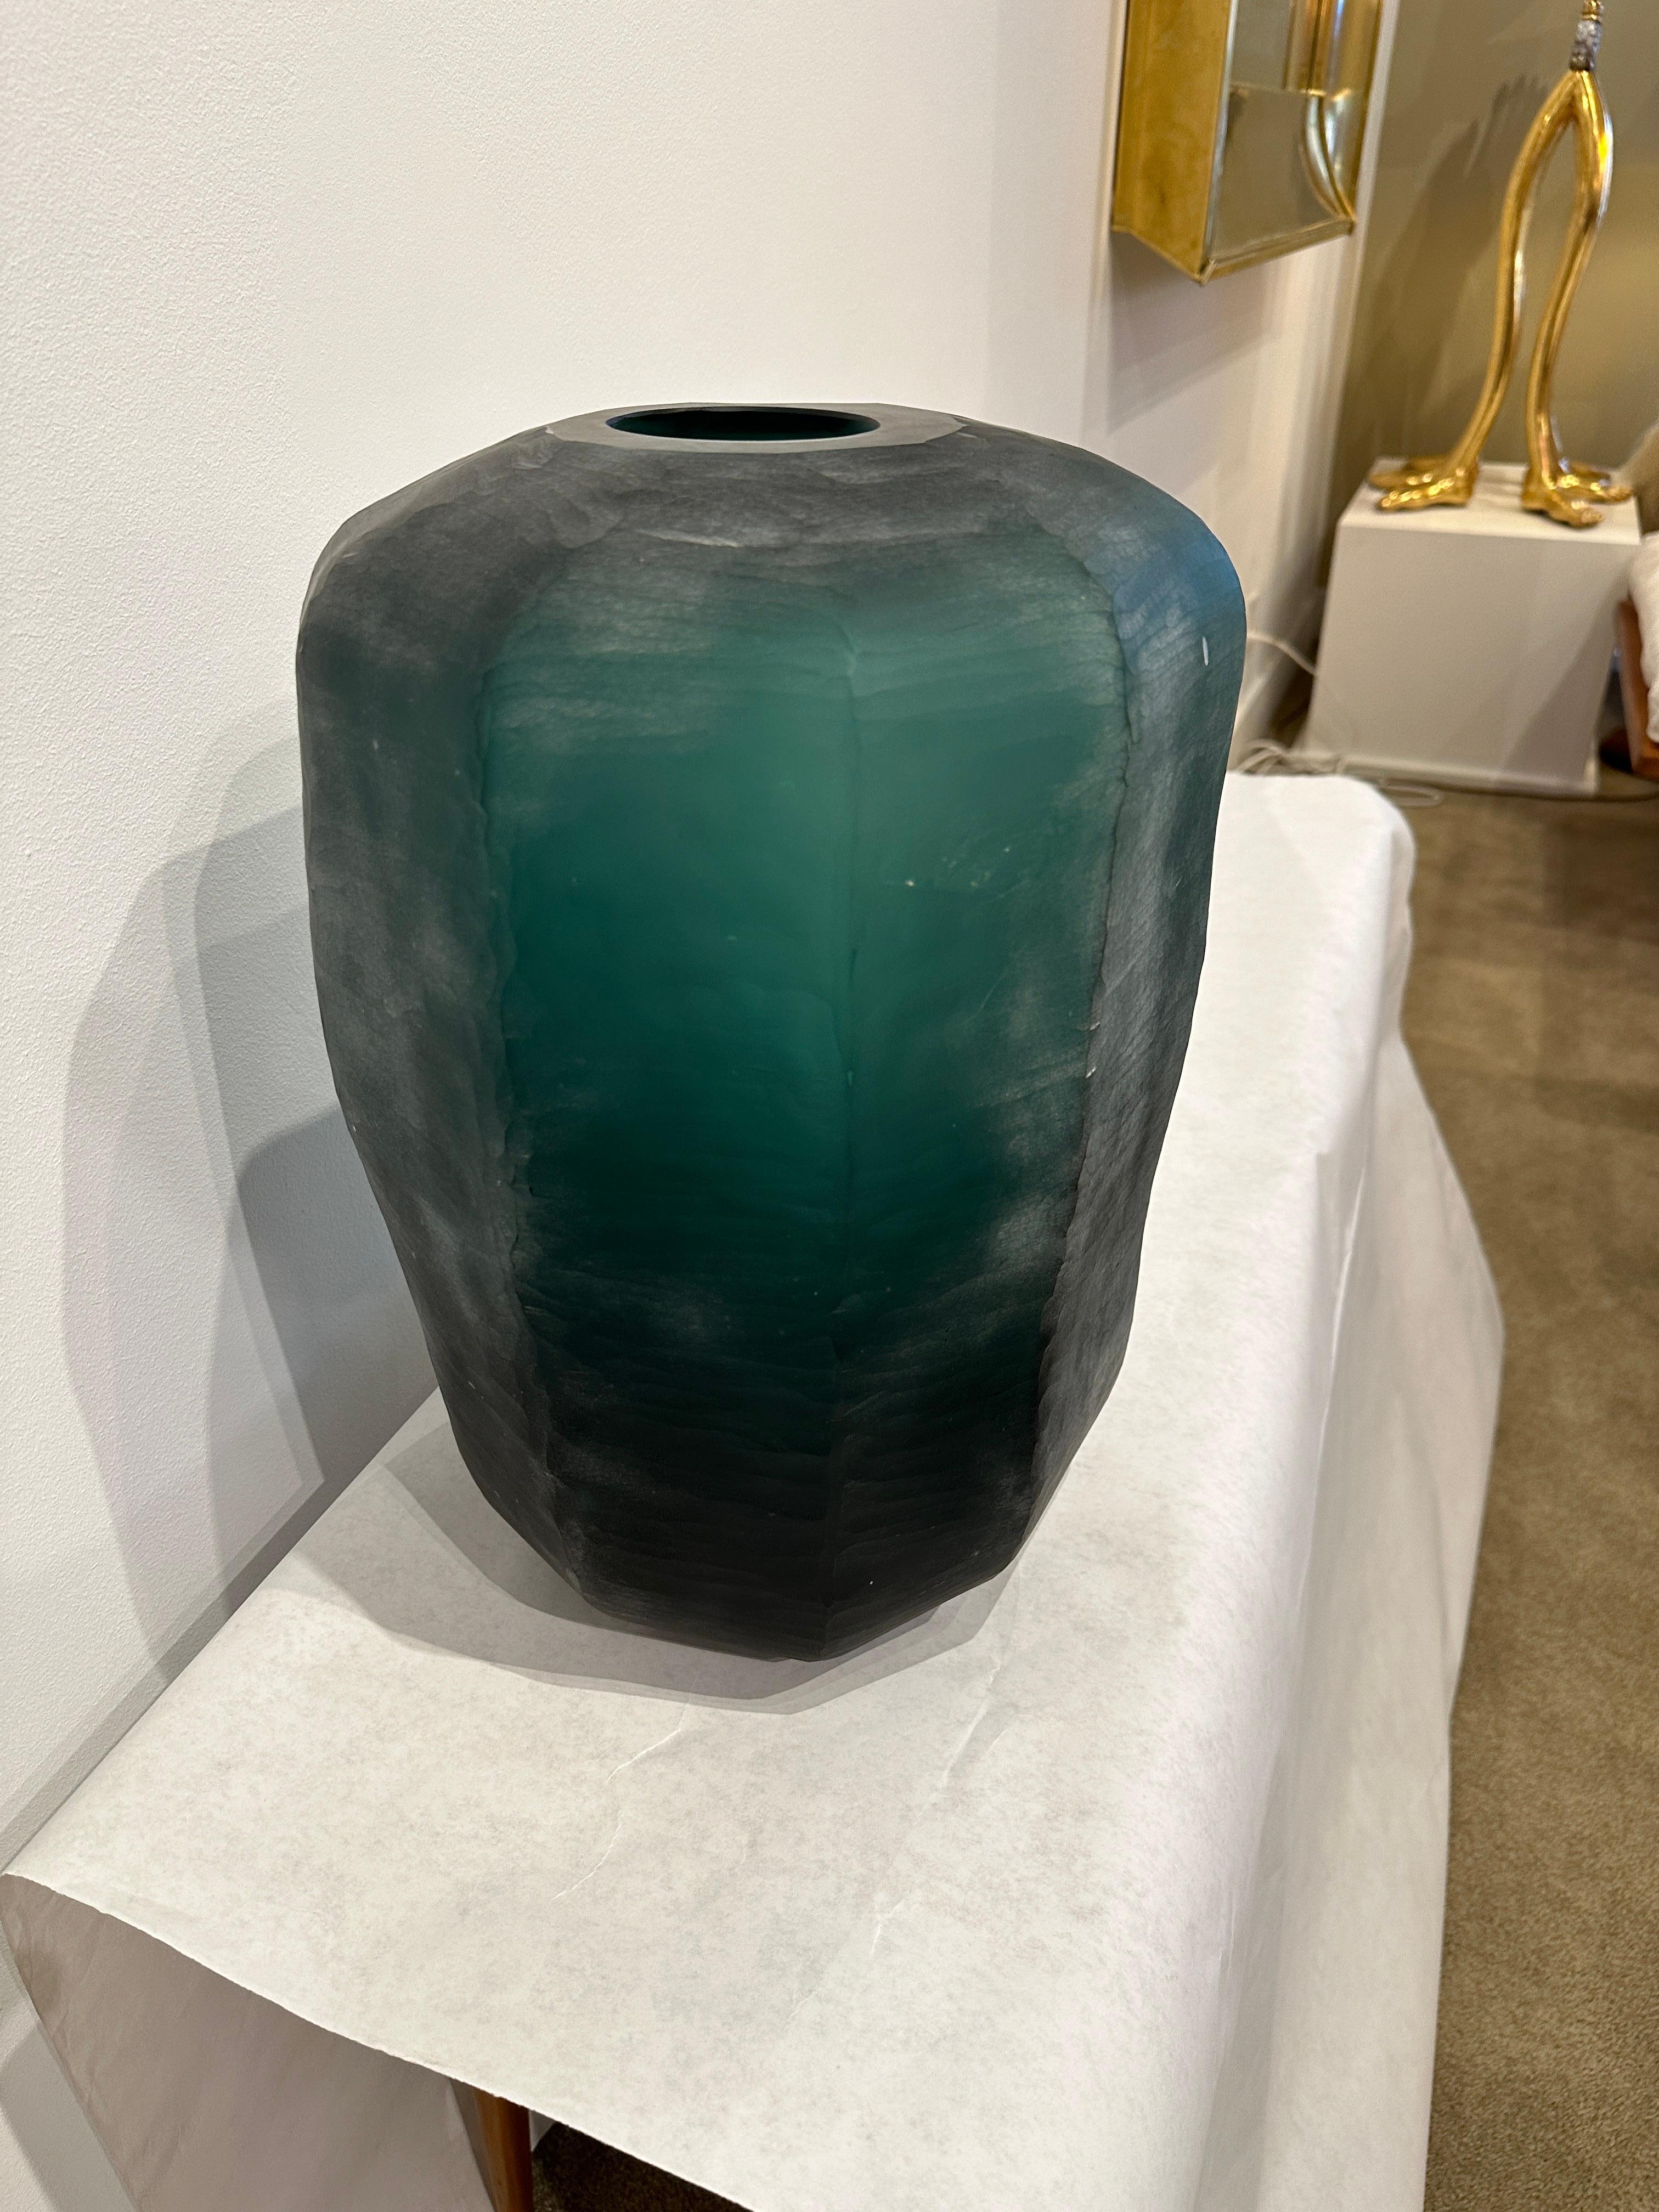 Dies ist eine super-coole tiefgrüne facettierte Murano-Glas übergroße Vase mit schönen Details in ganz. Die absichtlich raue Oberfläche des Äußeren verleiht diesem seltenen Stück so viel Tiefe und Schönheit.  DIESER ARTIKEL BEFINDET SICH IN UNSEREM